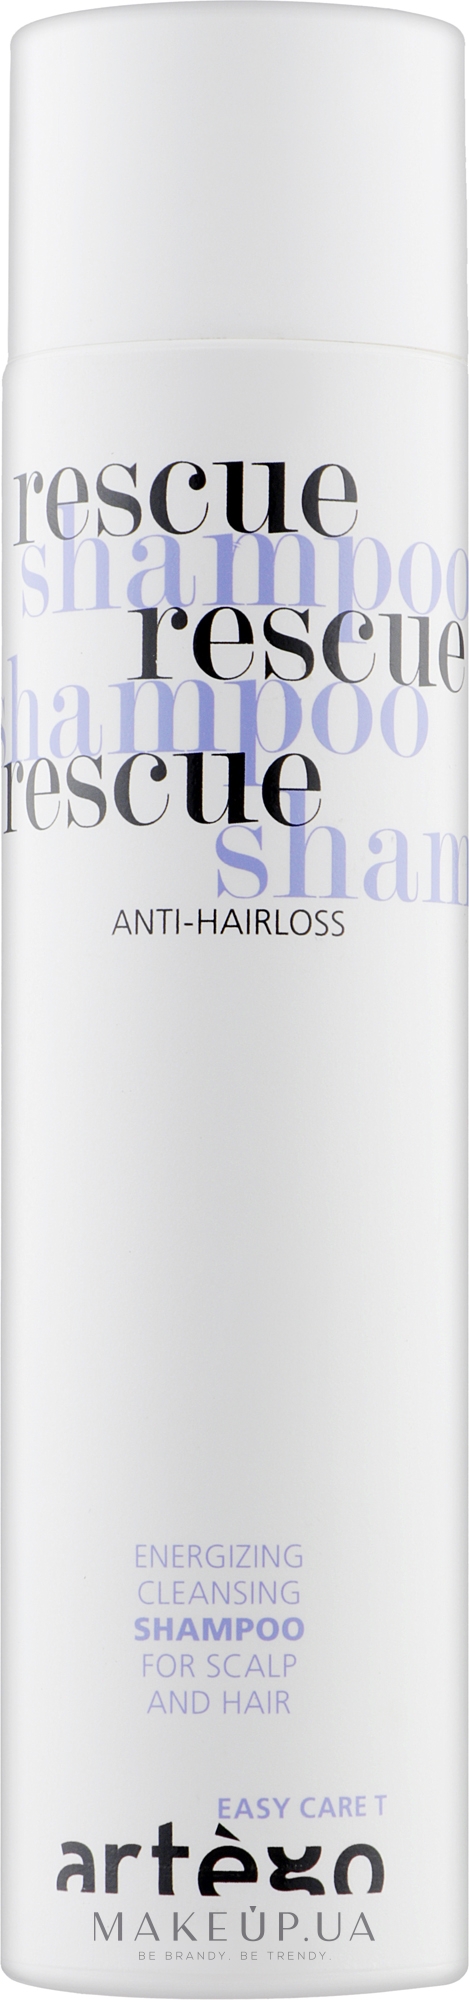 Шампунь від випадання волосся - Artego Easy Care T Rescue Shampoo — фото 250ml